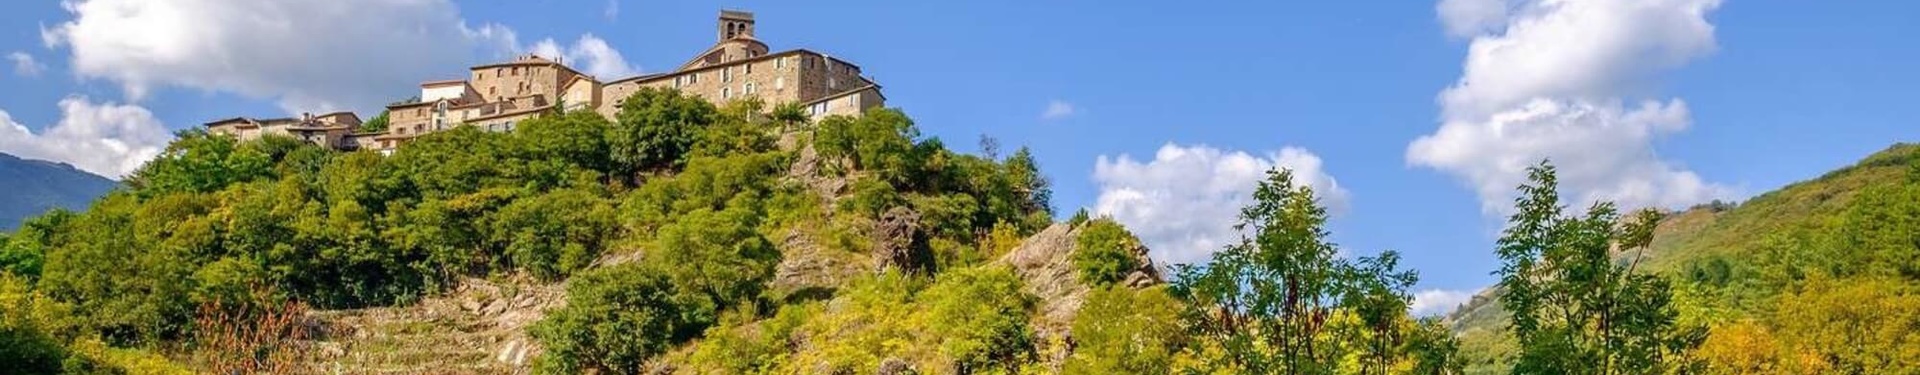 Formulaire de demande de devis - Ardèche aventure : séjour famille en Ardèche | Nature Occitane